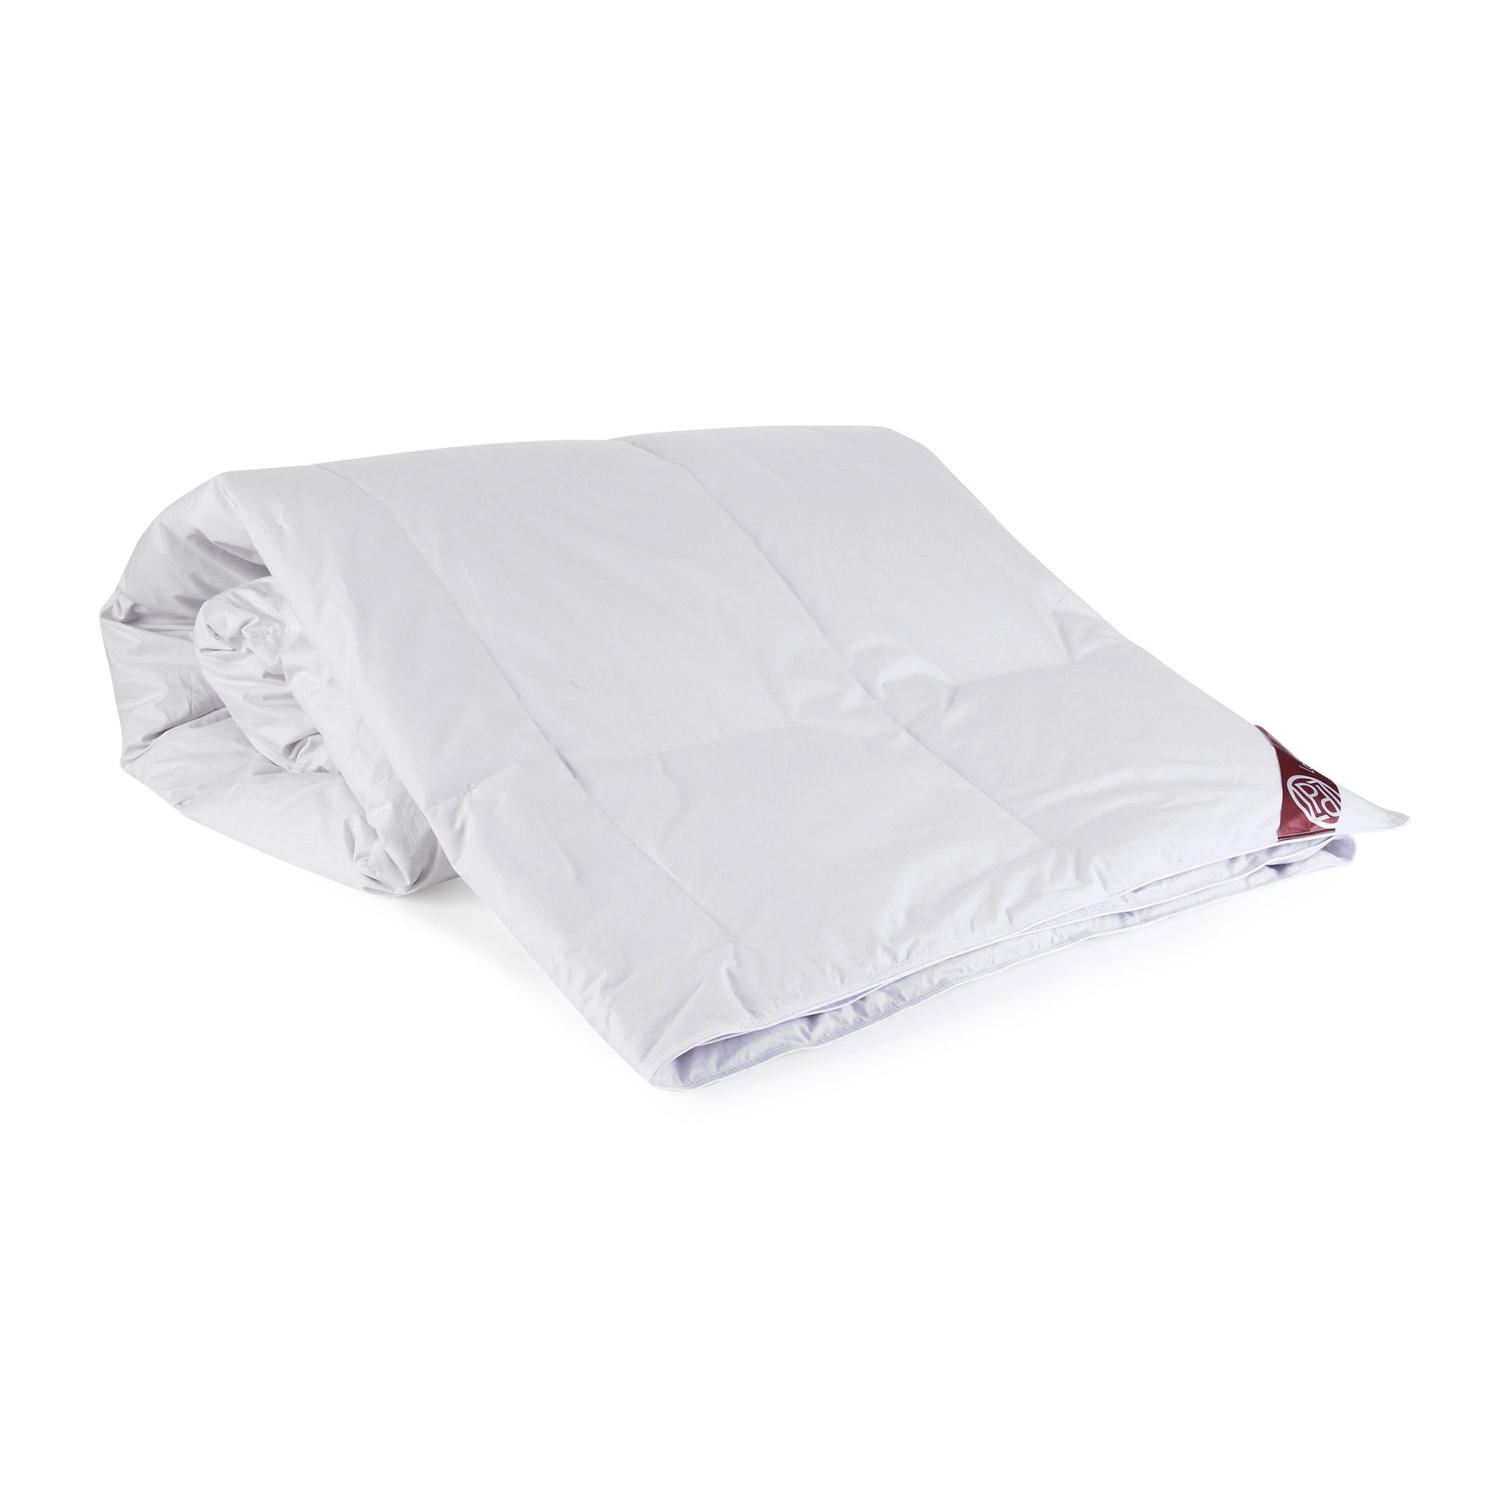 Пуховое одеяло Louis Pascal Камилла белое 200х220 см (ЛП2034), цвет белый - фото 1